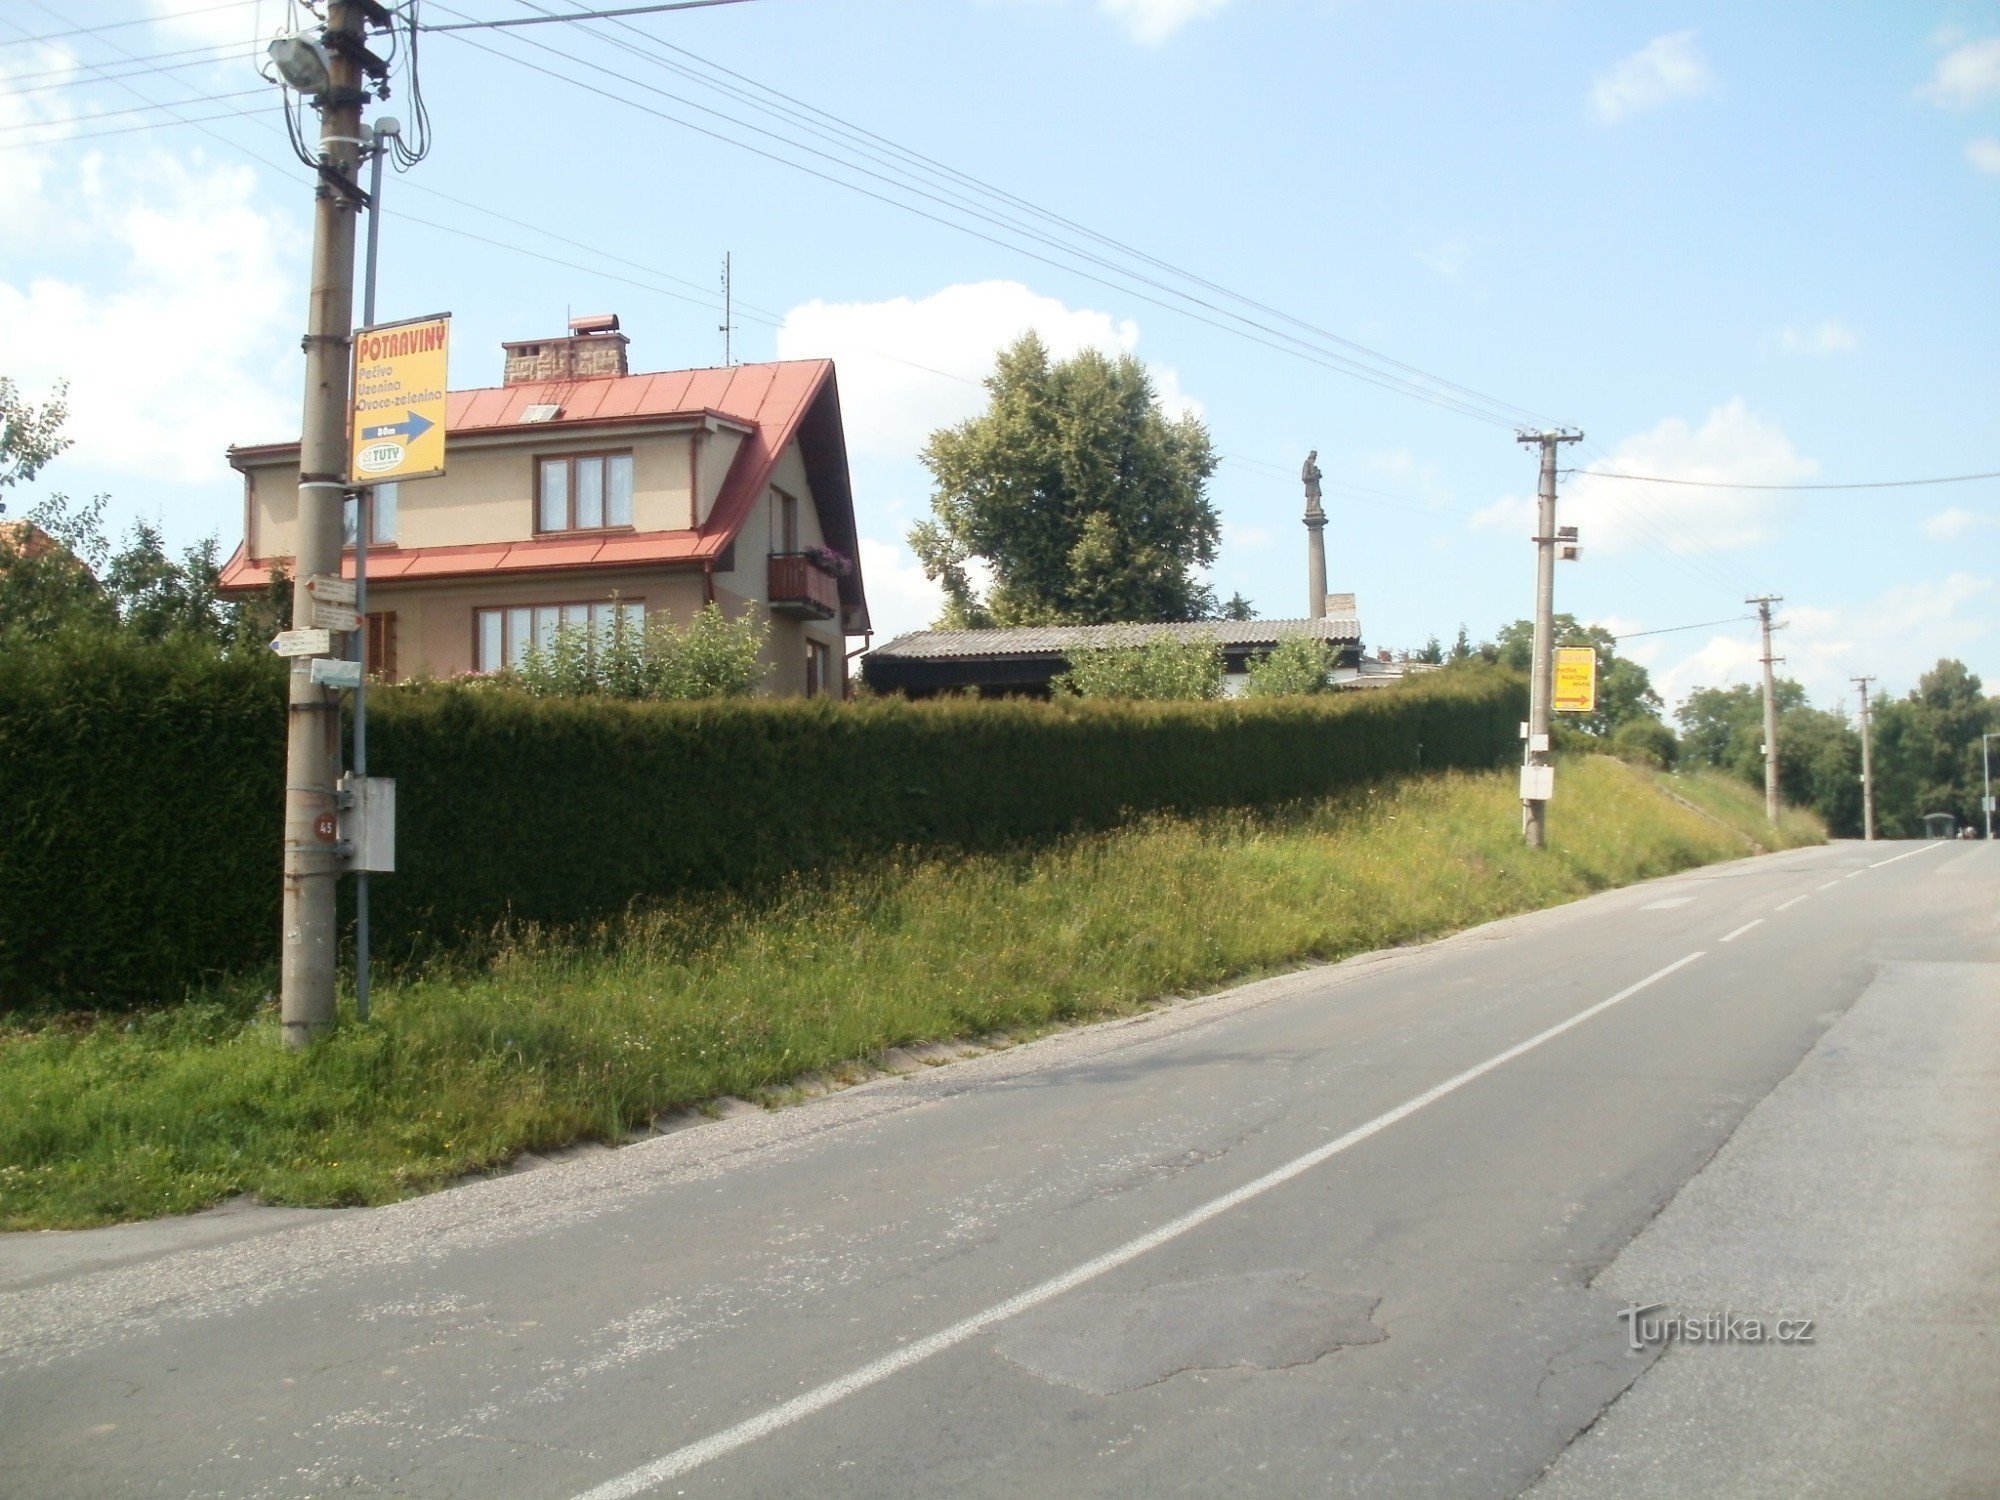 Valdice 的旅游十字路口